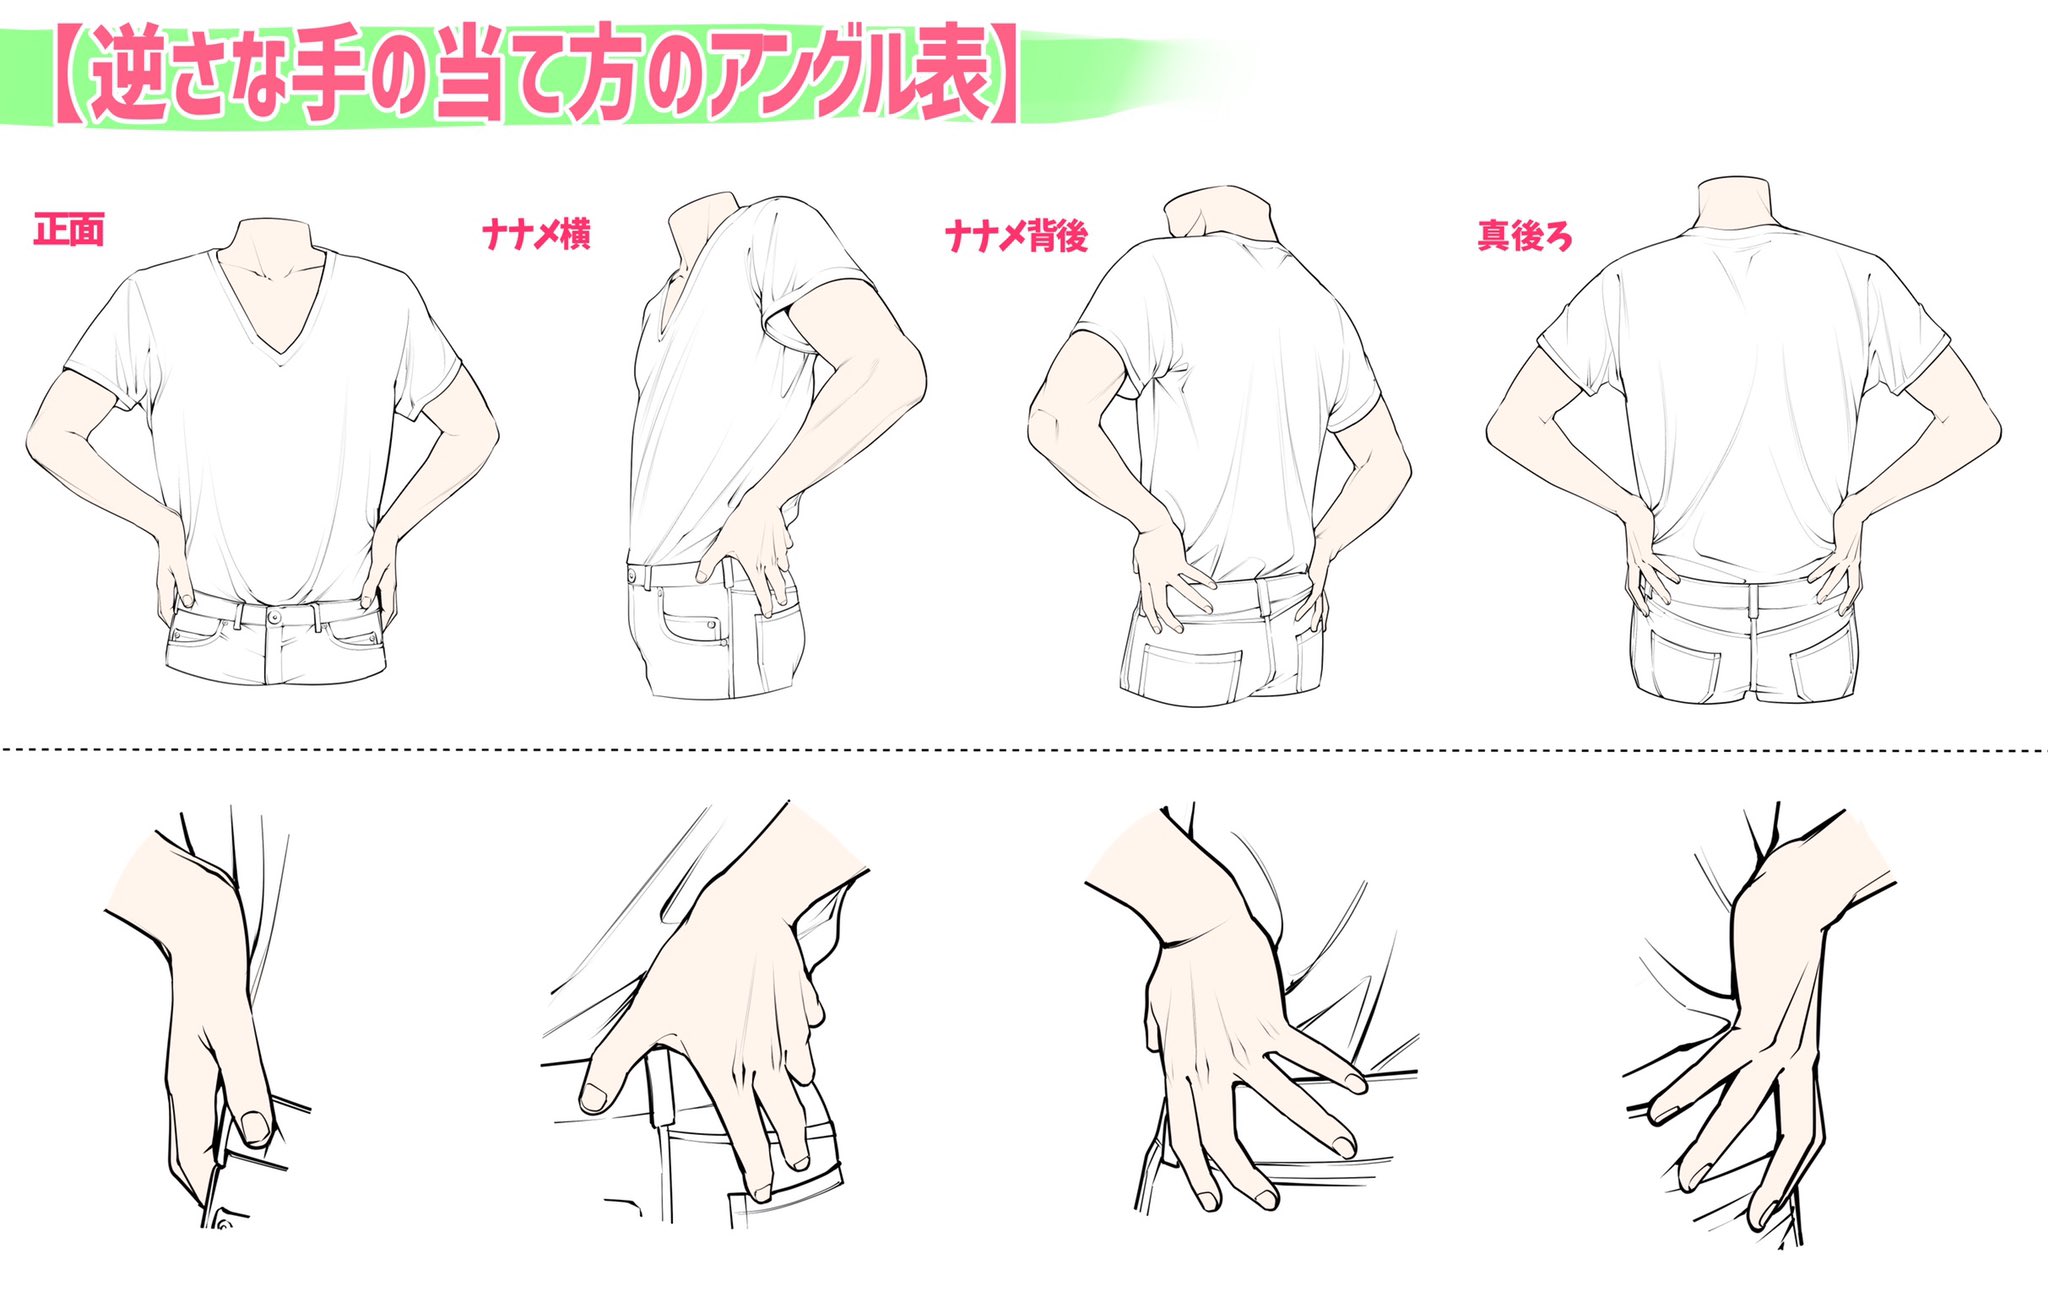 吉村拓也 イラスト講座 ポケットや腰に手を当てるポーズ 作画パターン図解 作りました ご自由に練習にお使いください T Co W4cmmjlocy Twitter